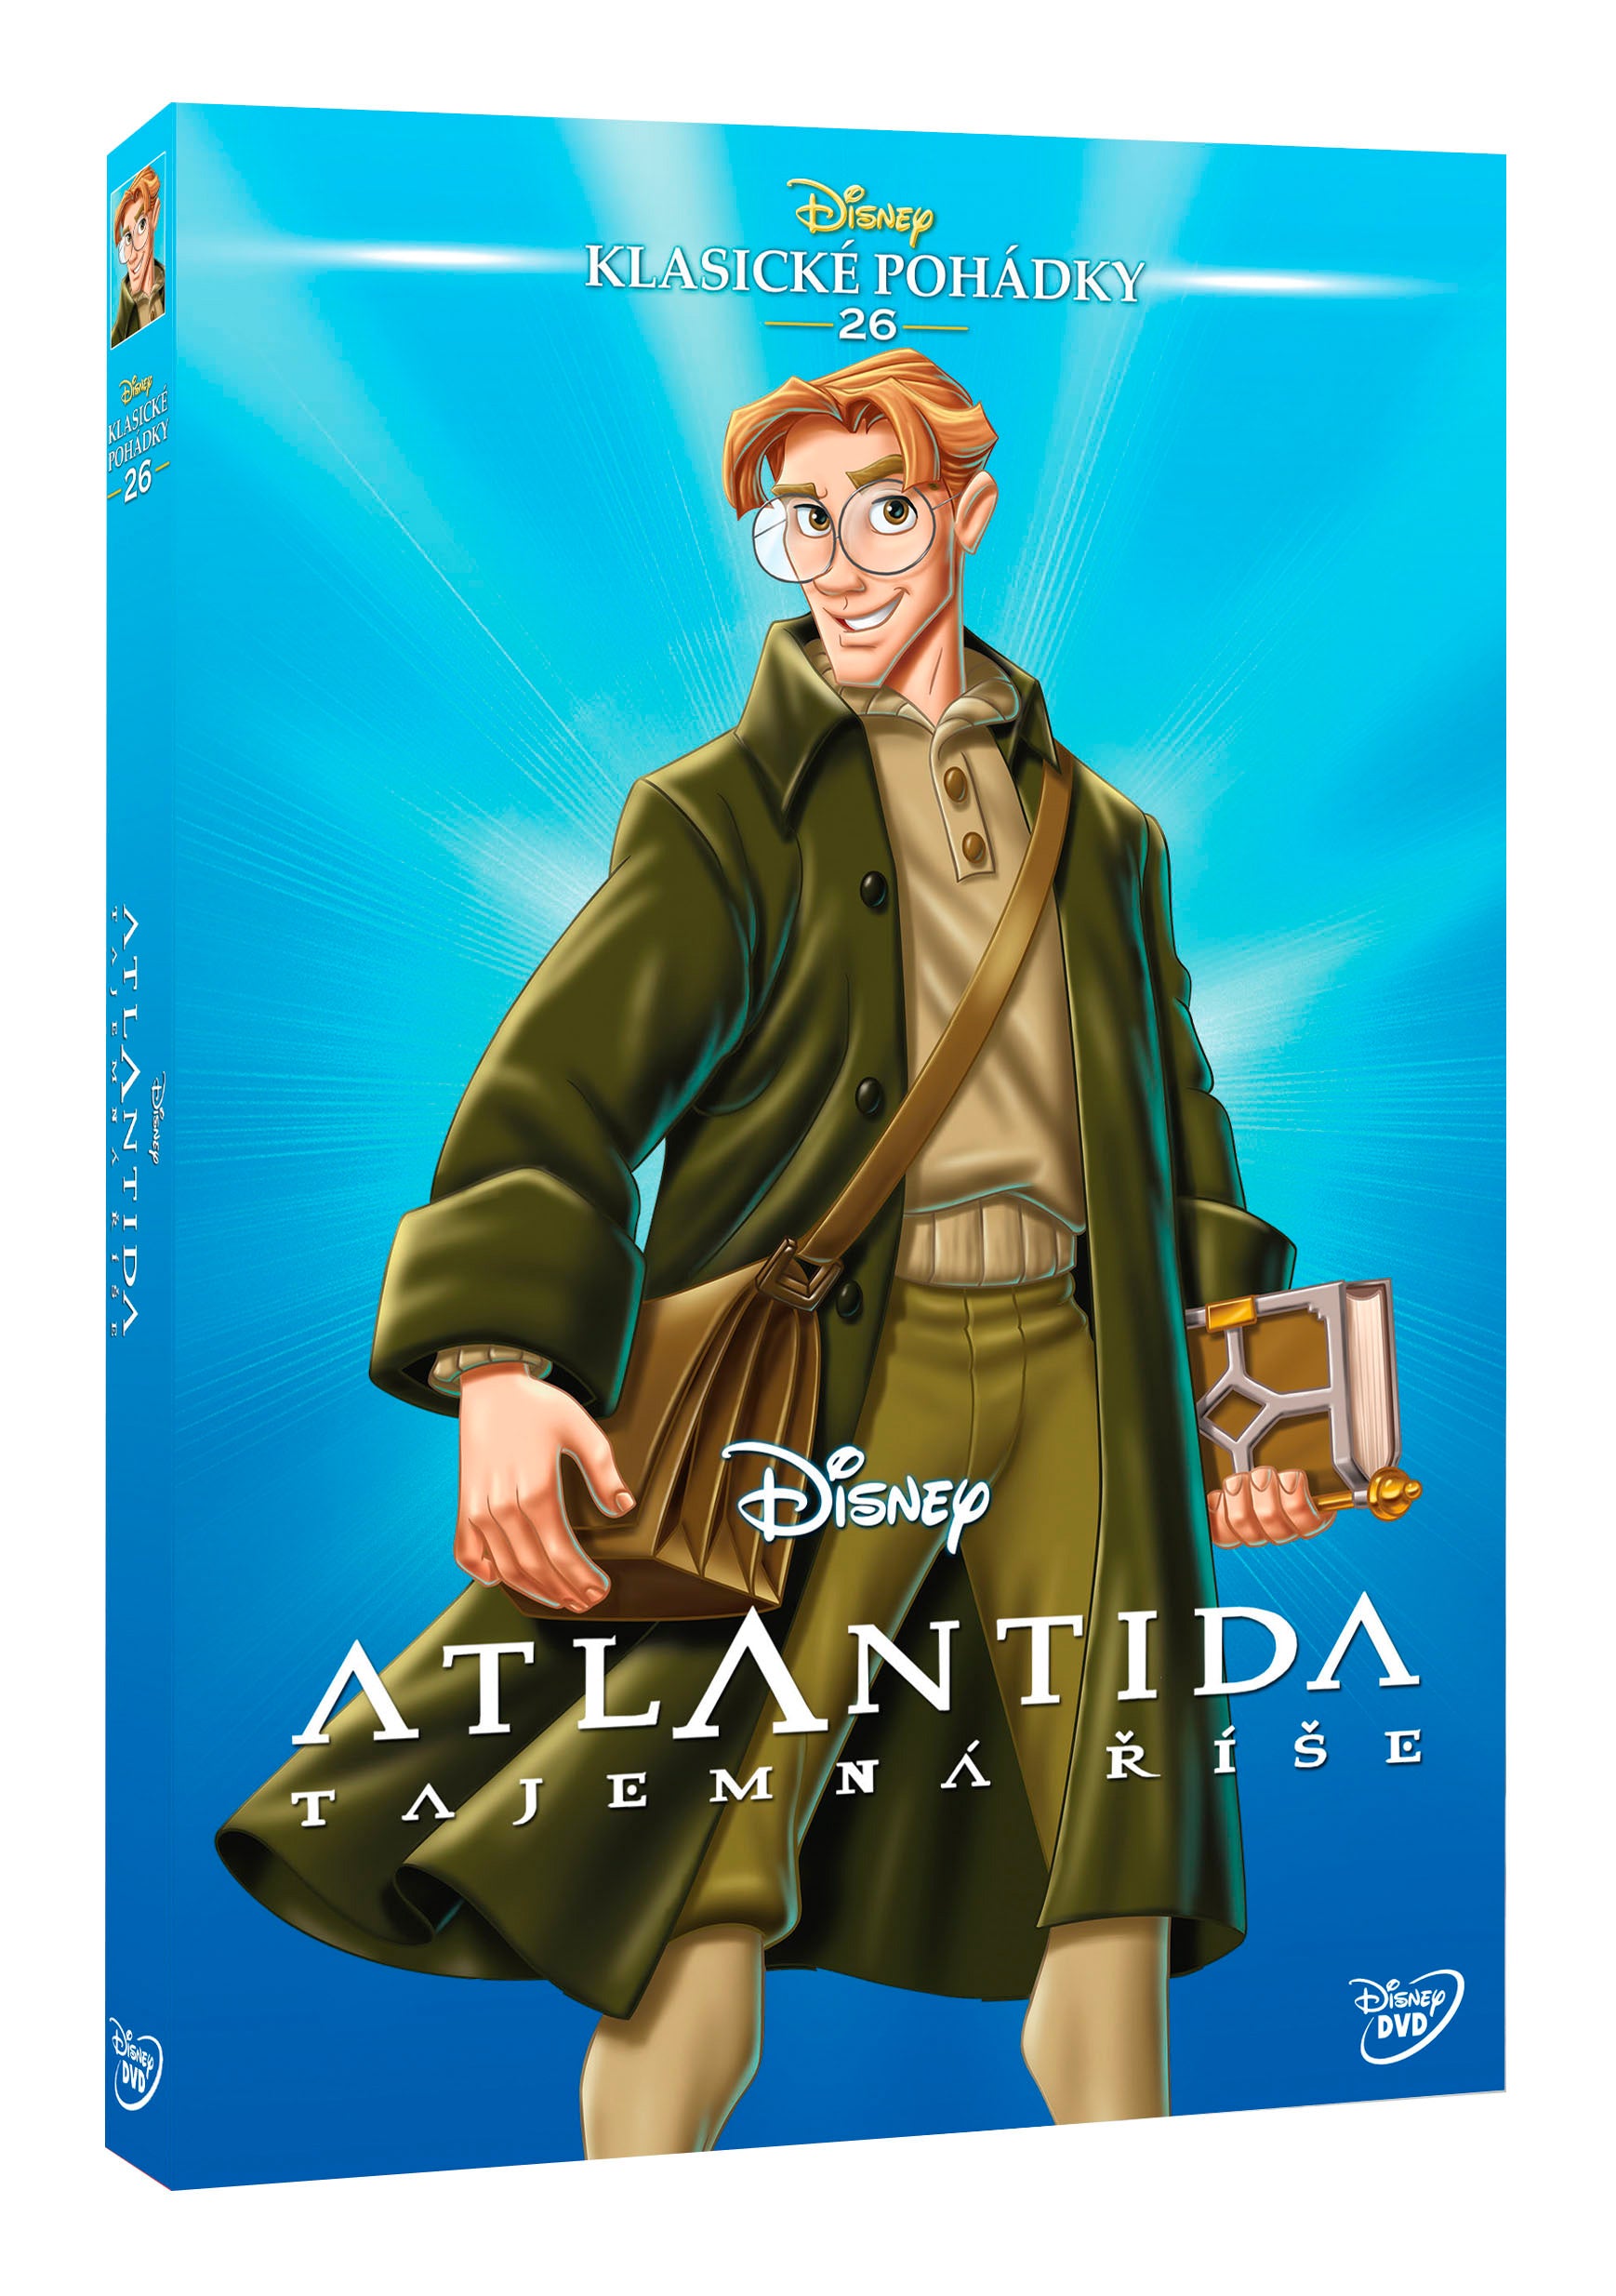 Atlantida: Tajemna rise - Edice Disney klasicke pohadky c.26 (Atlantis: The Lost Empire)